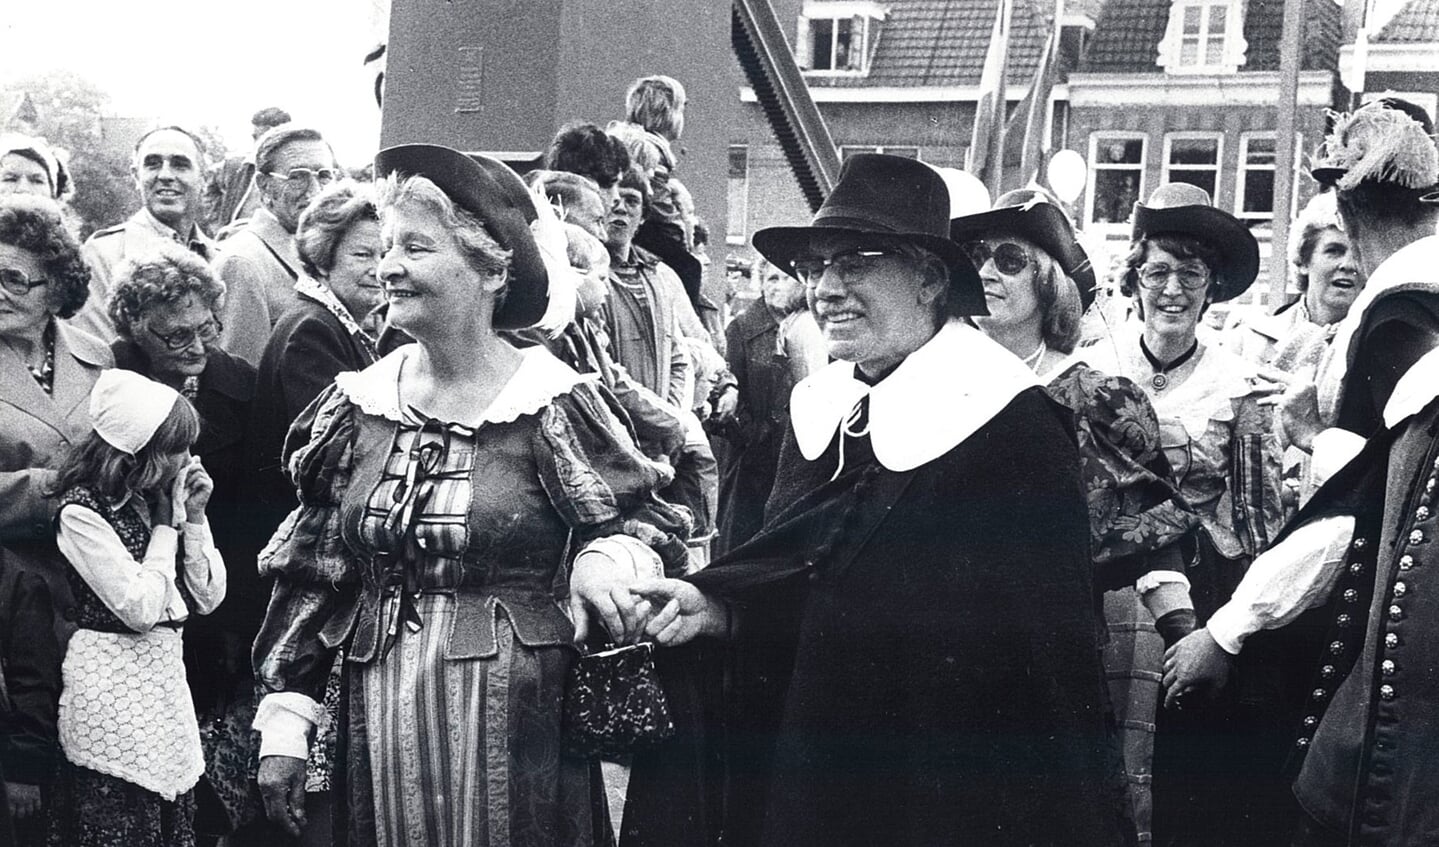 De officiële opening in september 1978 (velen in klederdracht) is tevens het startsein voor het eerste Sluis-en-bruggenfeest